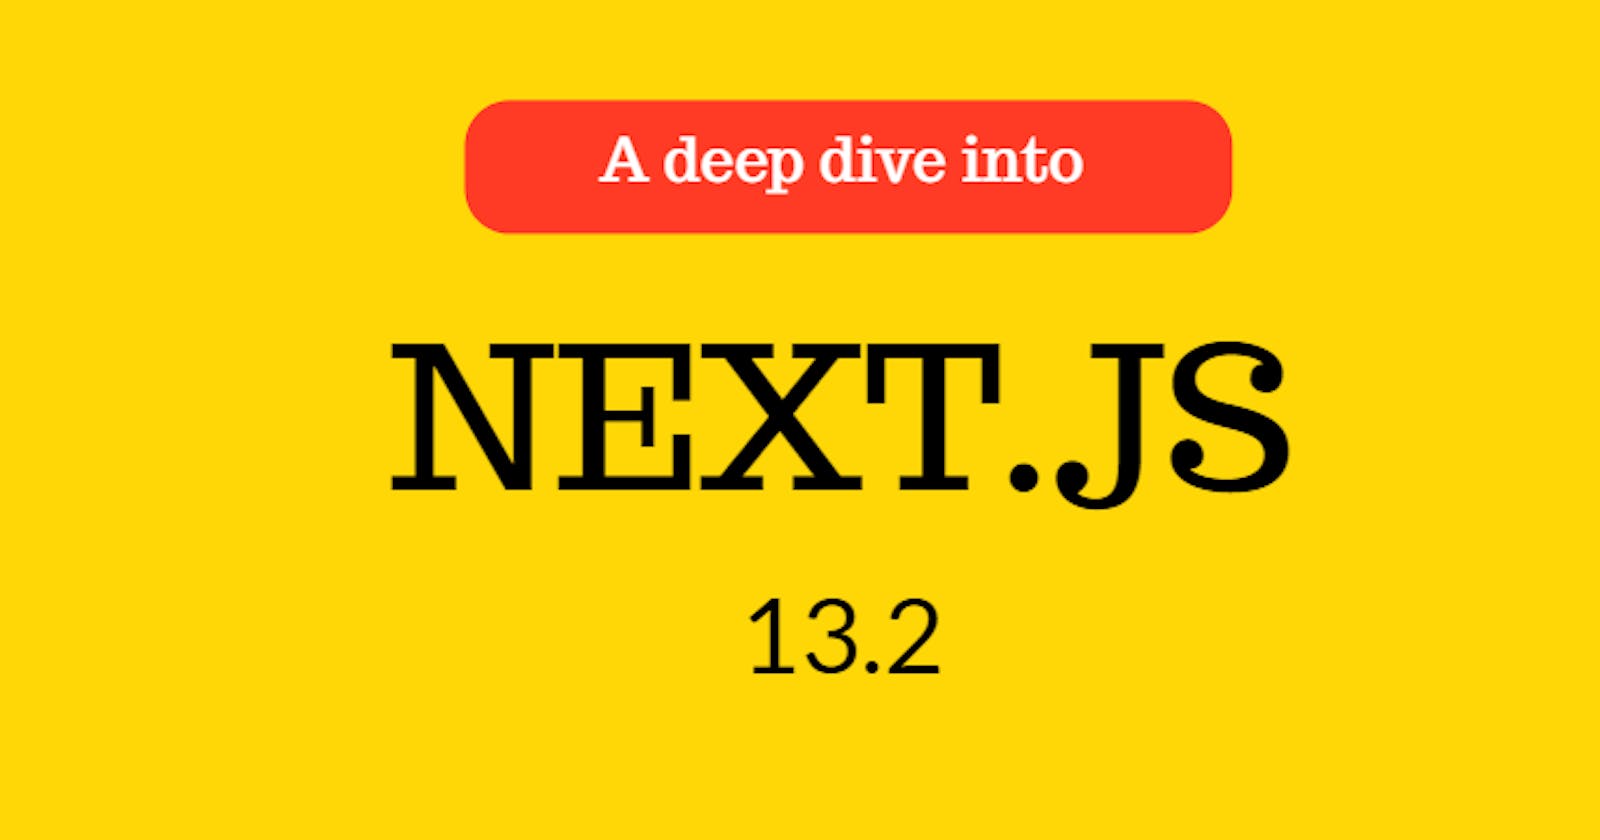 A deep dive into Next.js 13.2